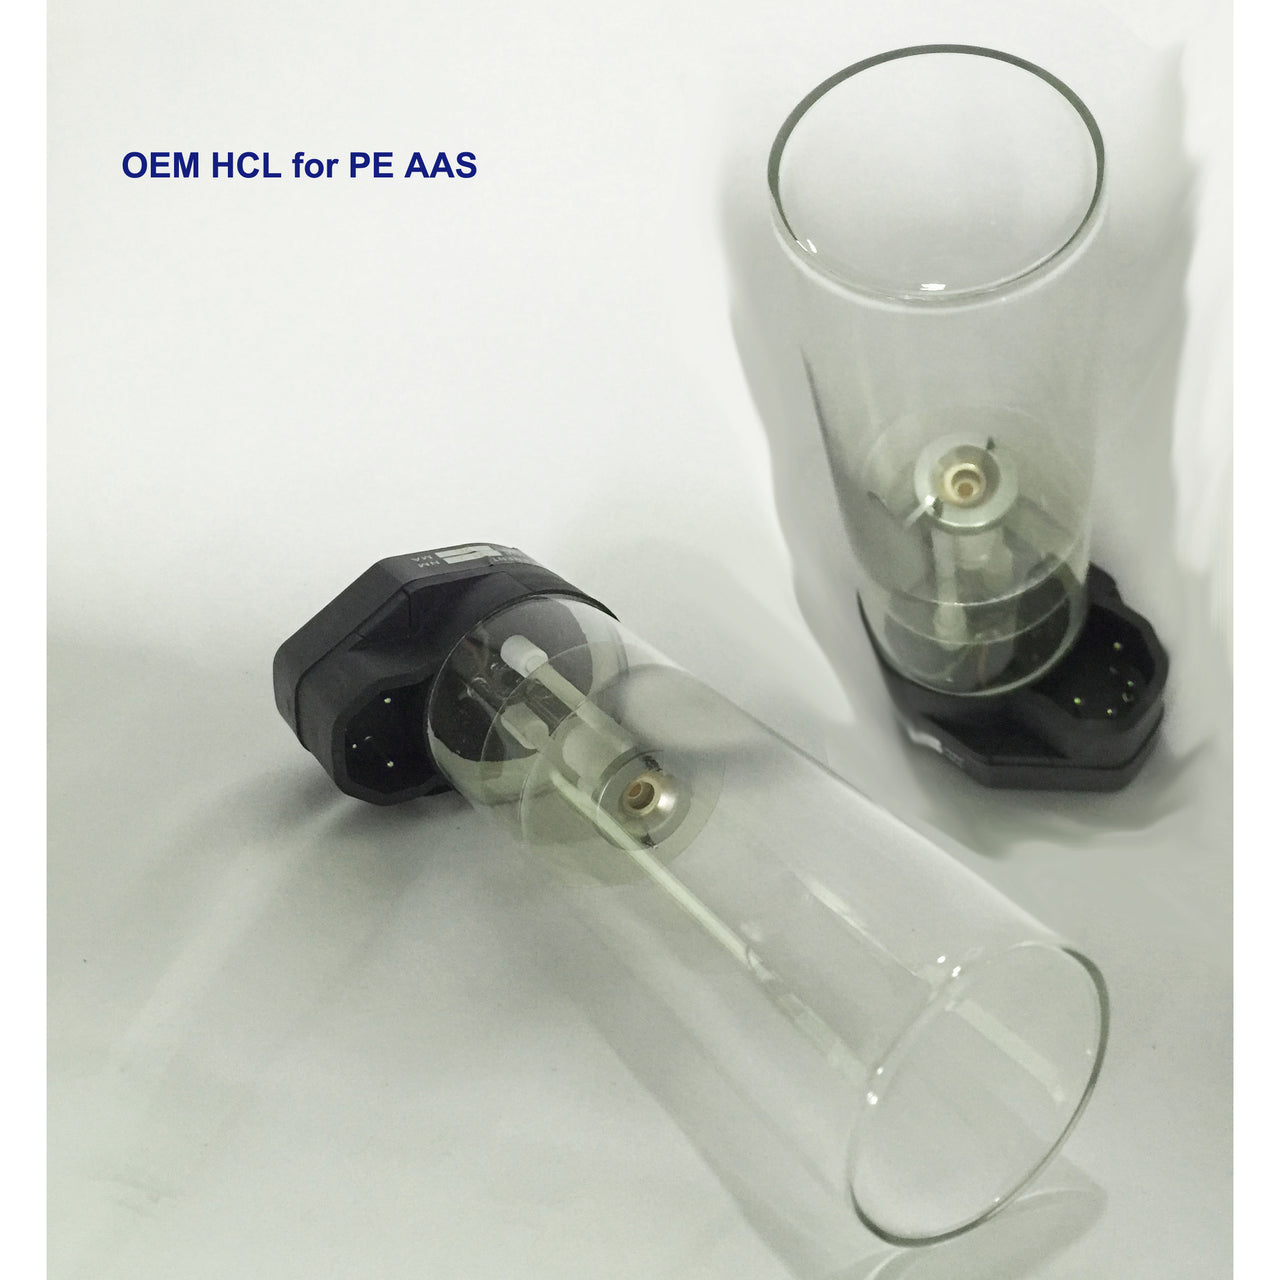 Hollow Cathode Lamp, Indium - In